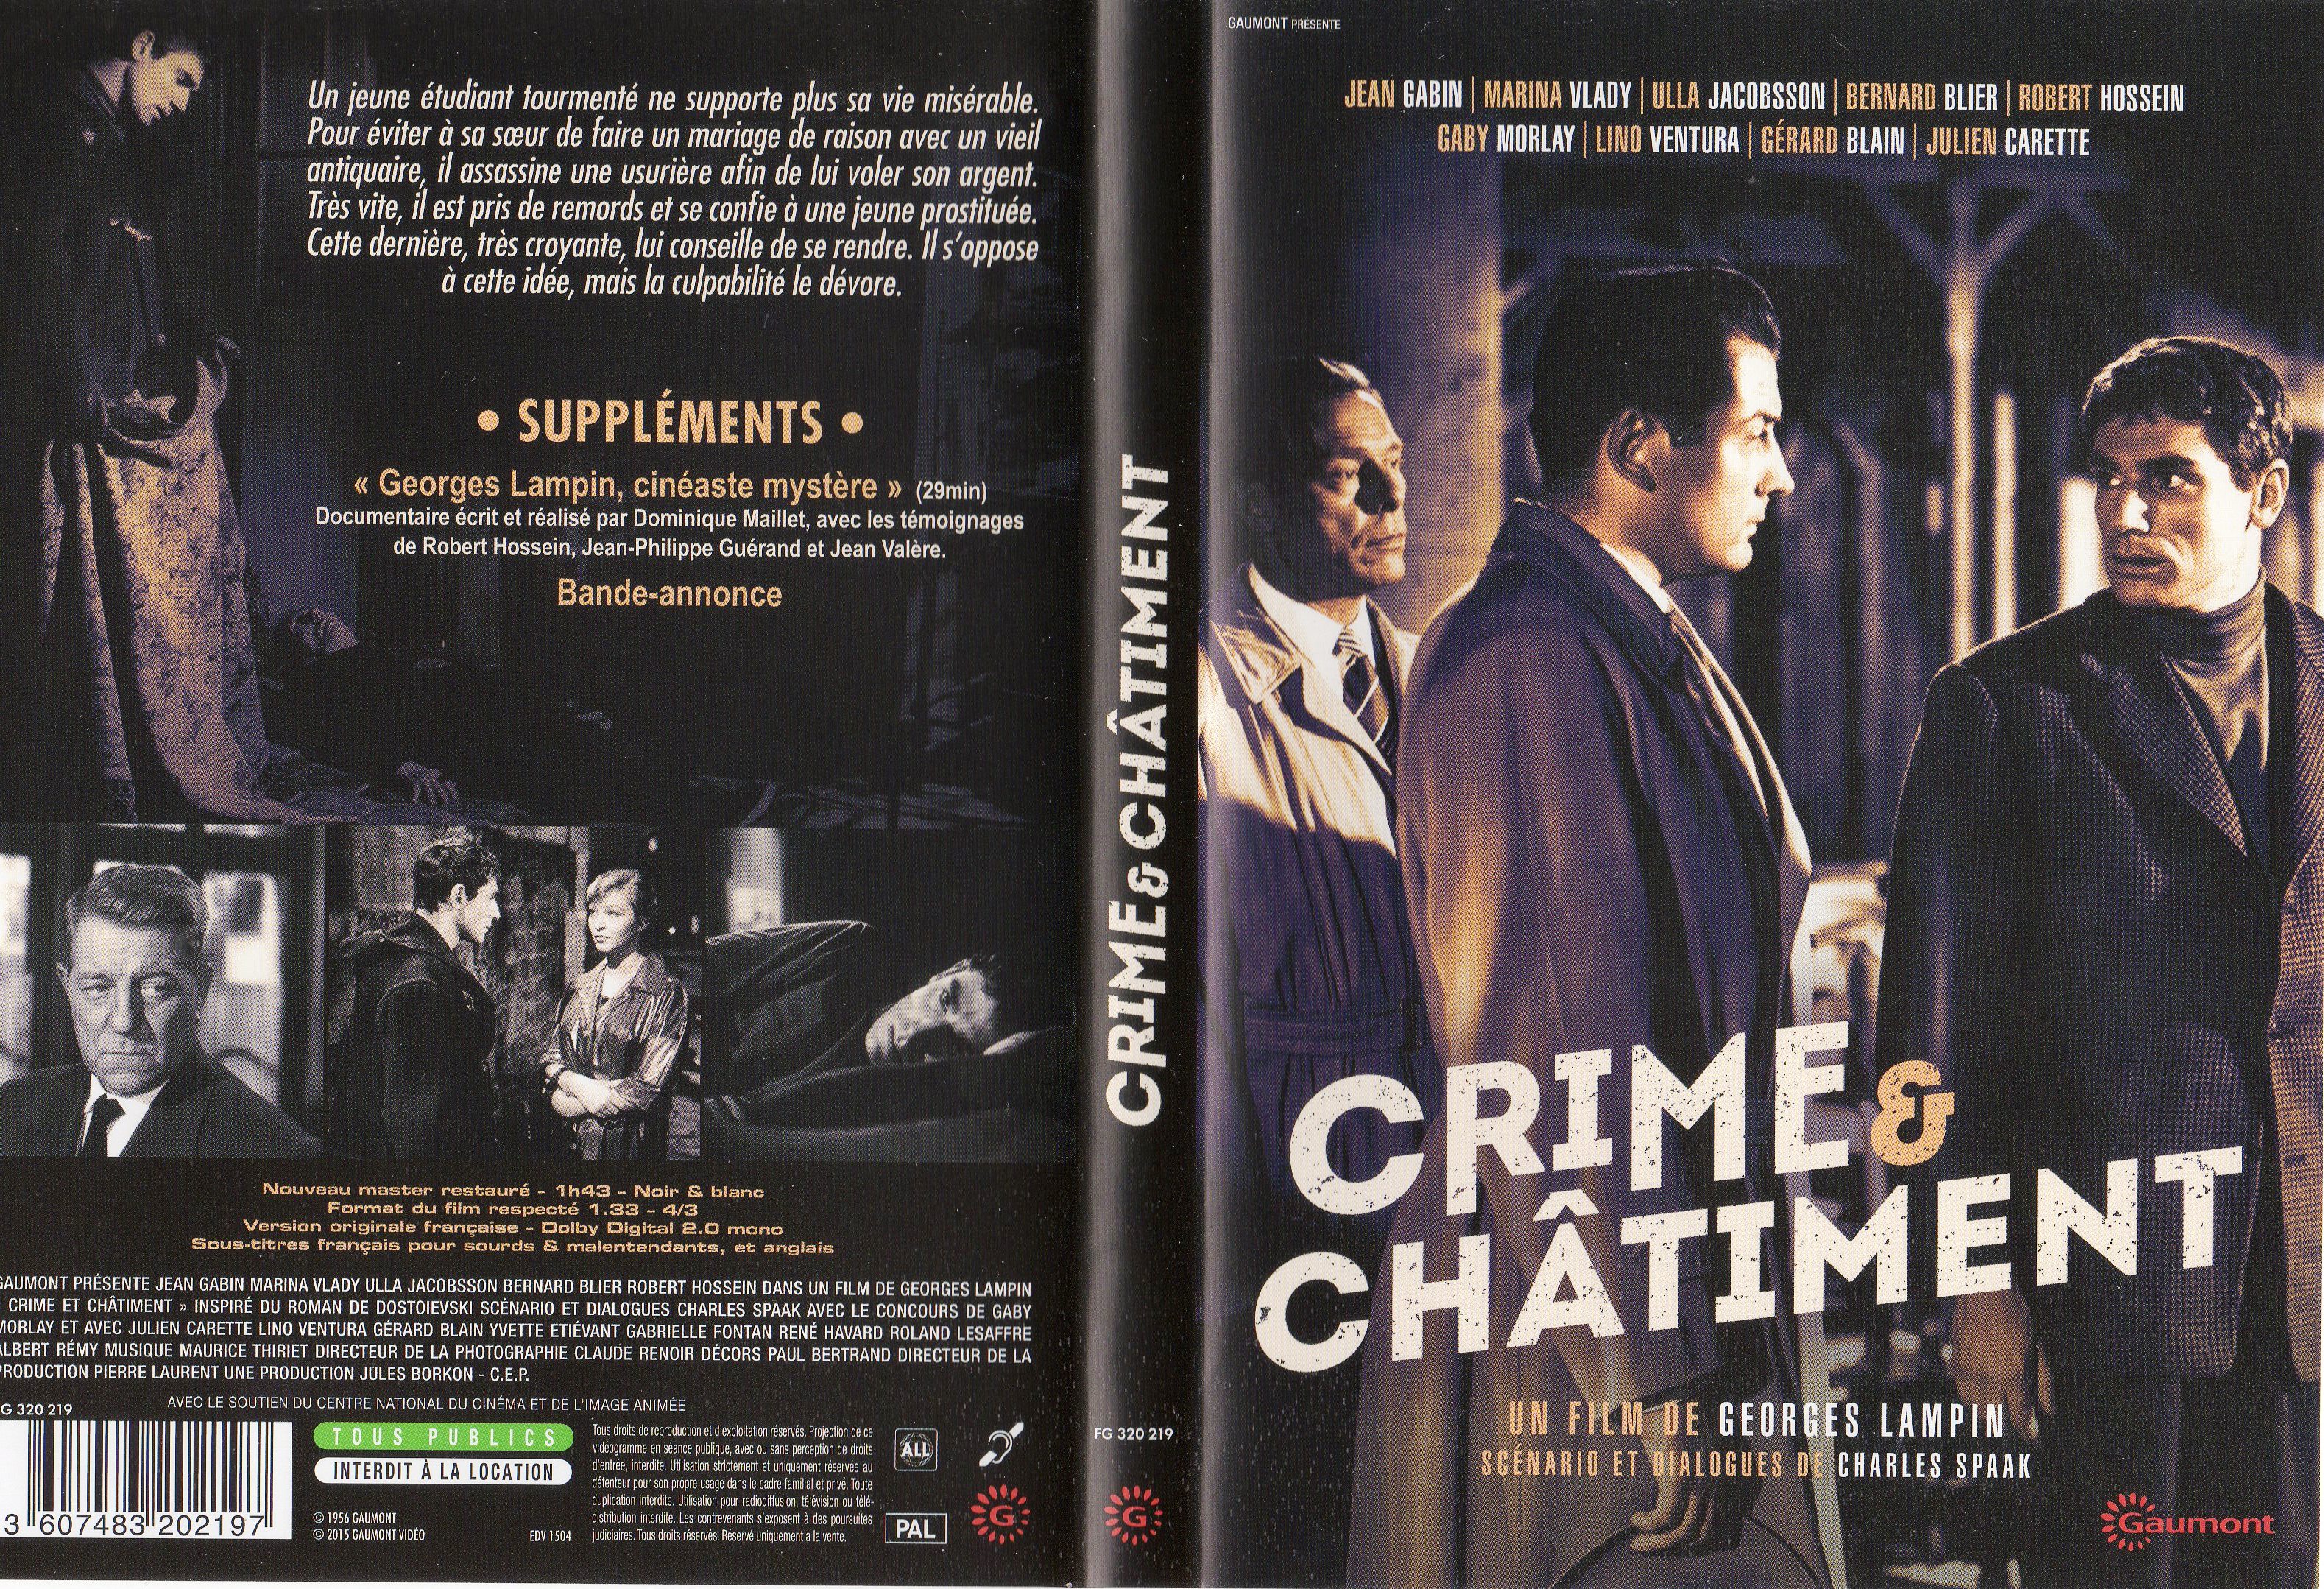 Jaquette DVD Crime et chatiment (Jean Gabin) v2